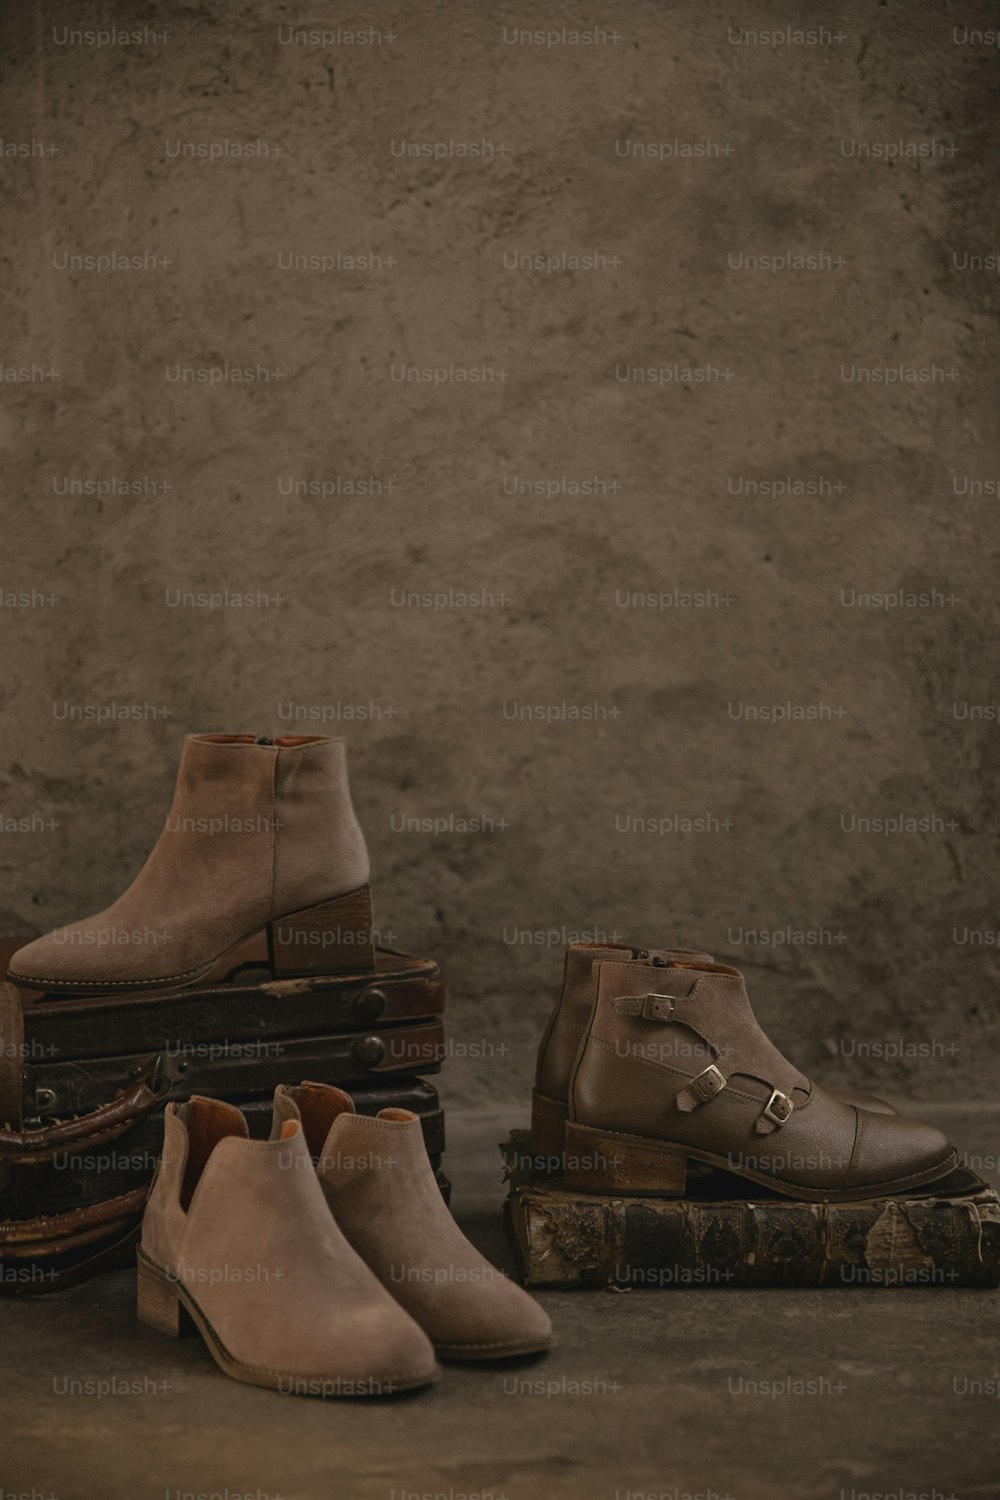 수하물 더미 위에 앉아있는 신발 그룹